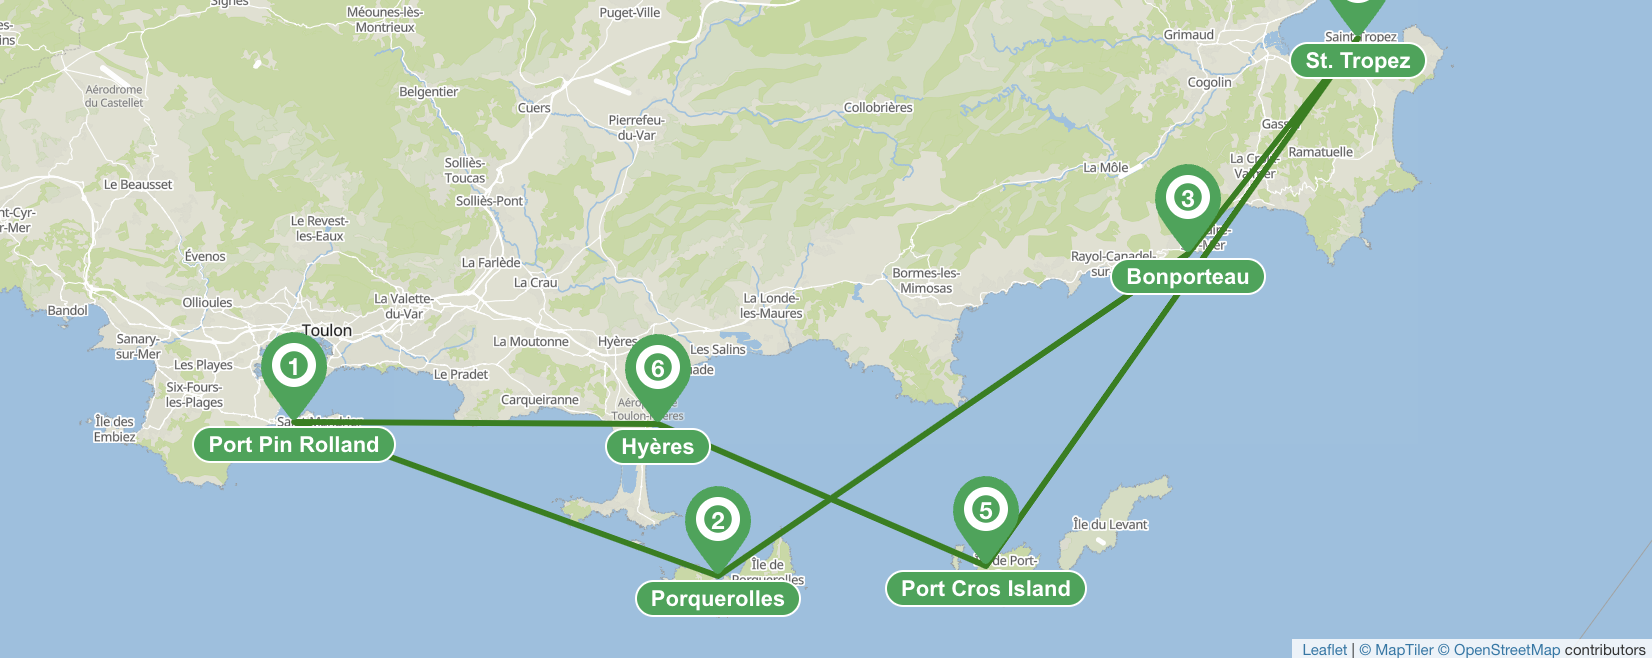 Itinéraire de navigation de 7 jours sur la Côte d'Azur